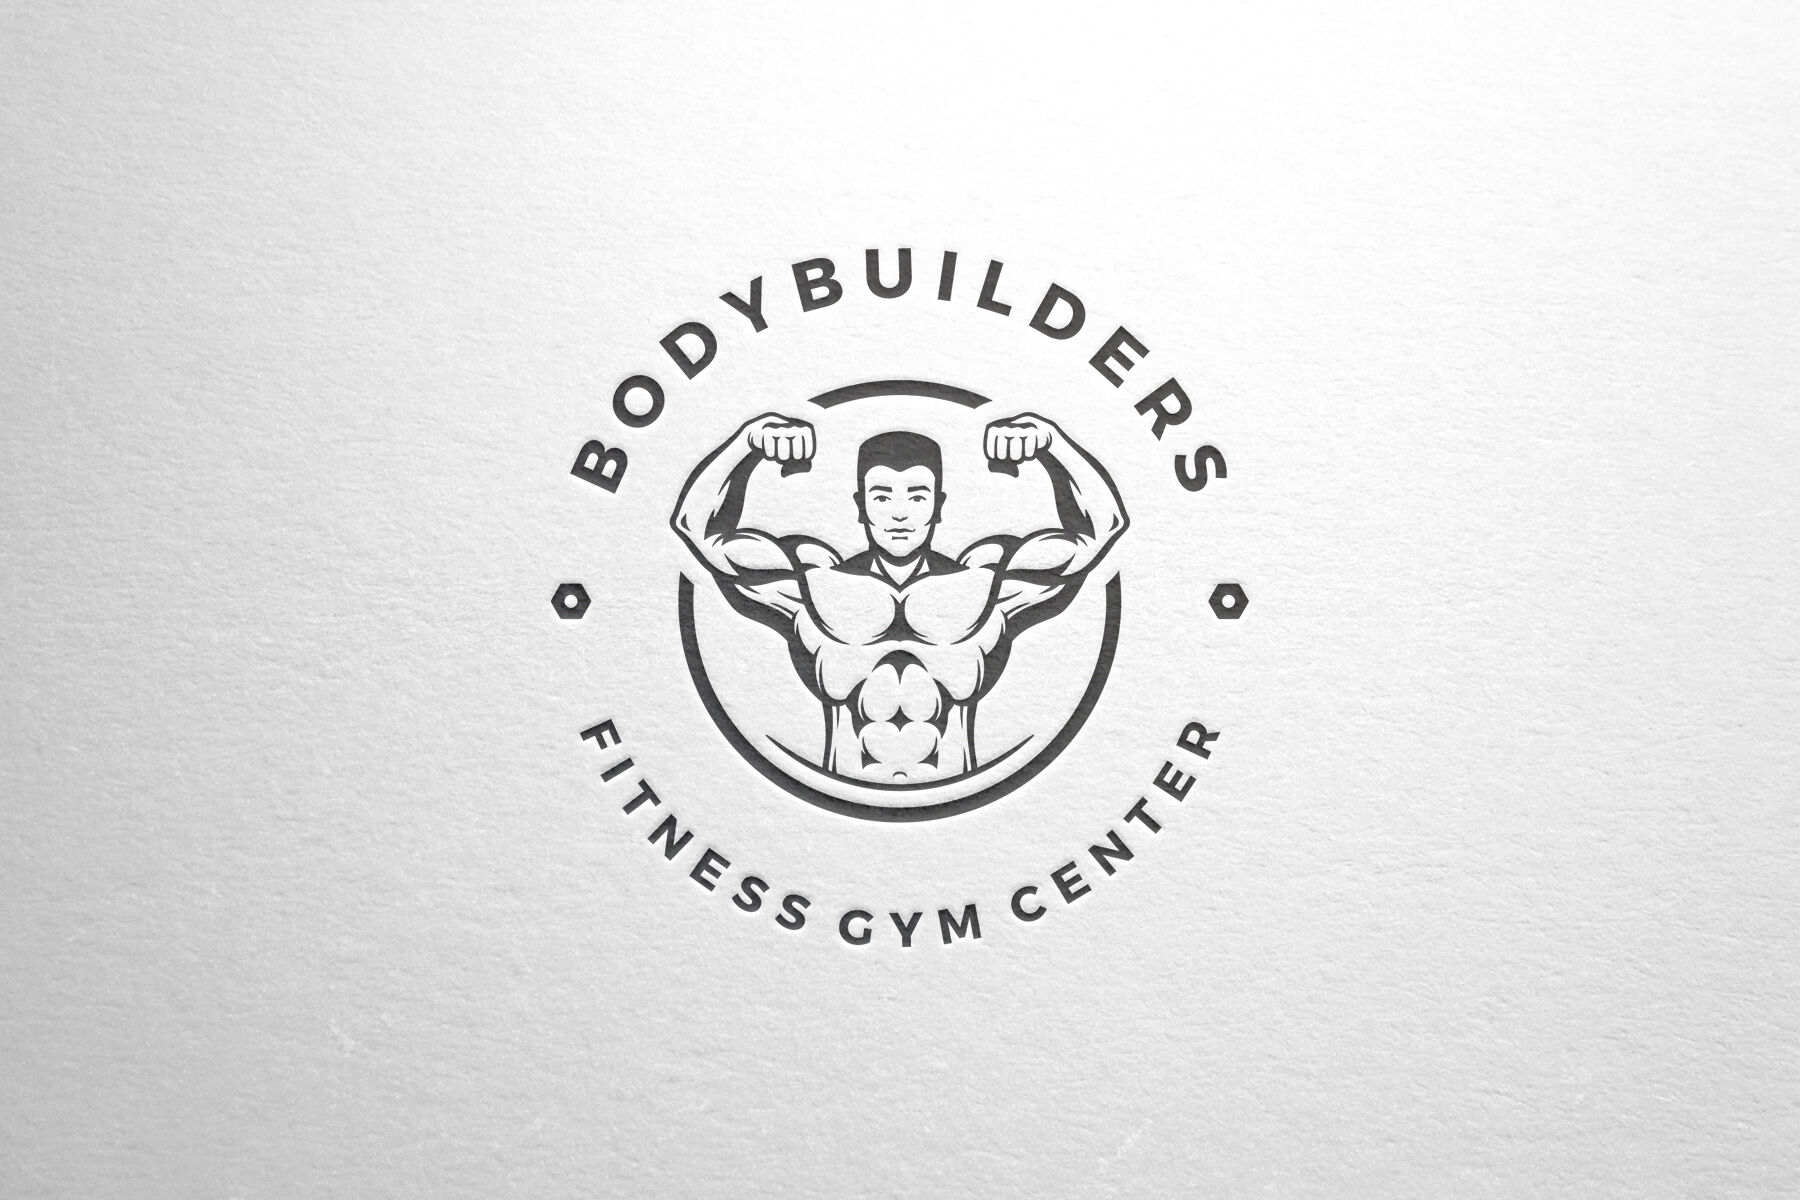 fitness gym logo design